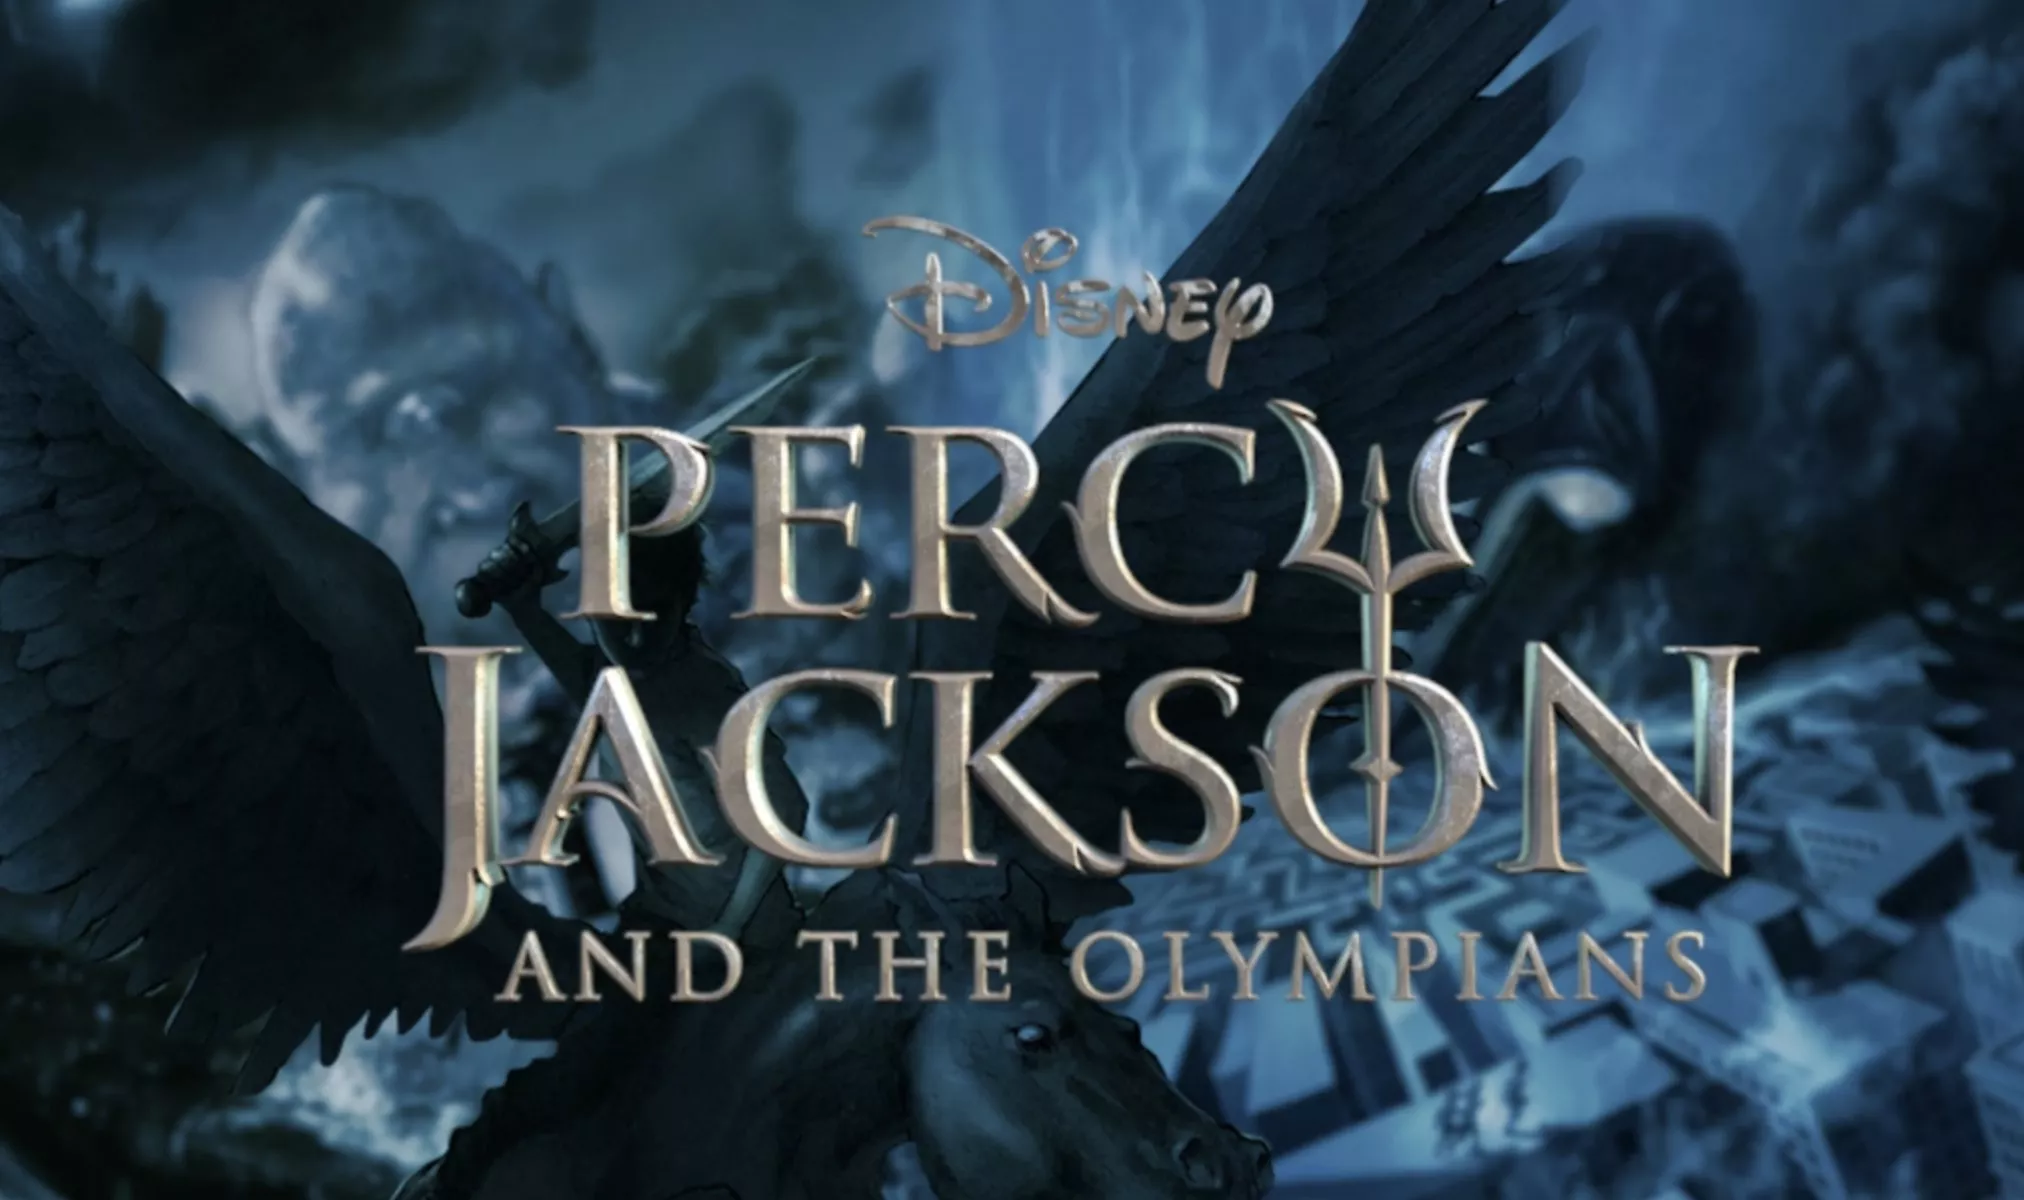 image 9a697378 7257 4a30 a880 83500d5811eb Série de Percy Jackson para o Disney+ deve começar produção em 2022.